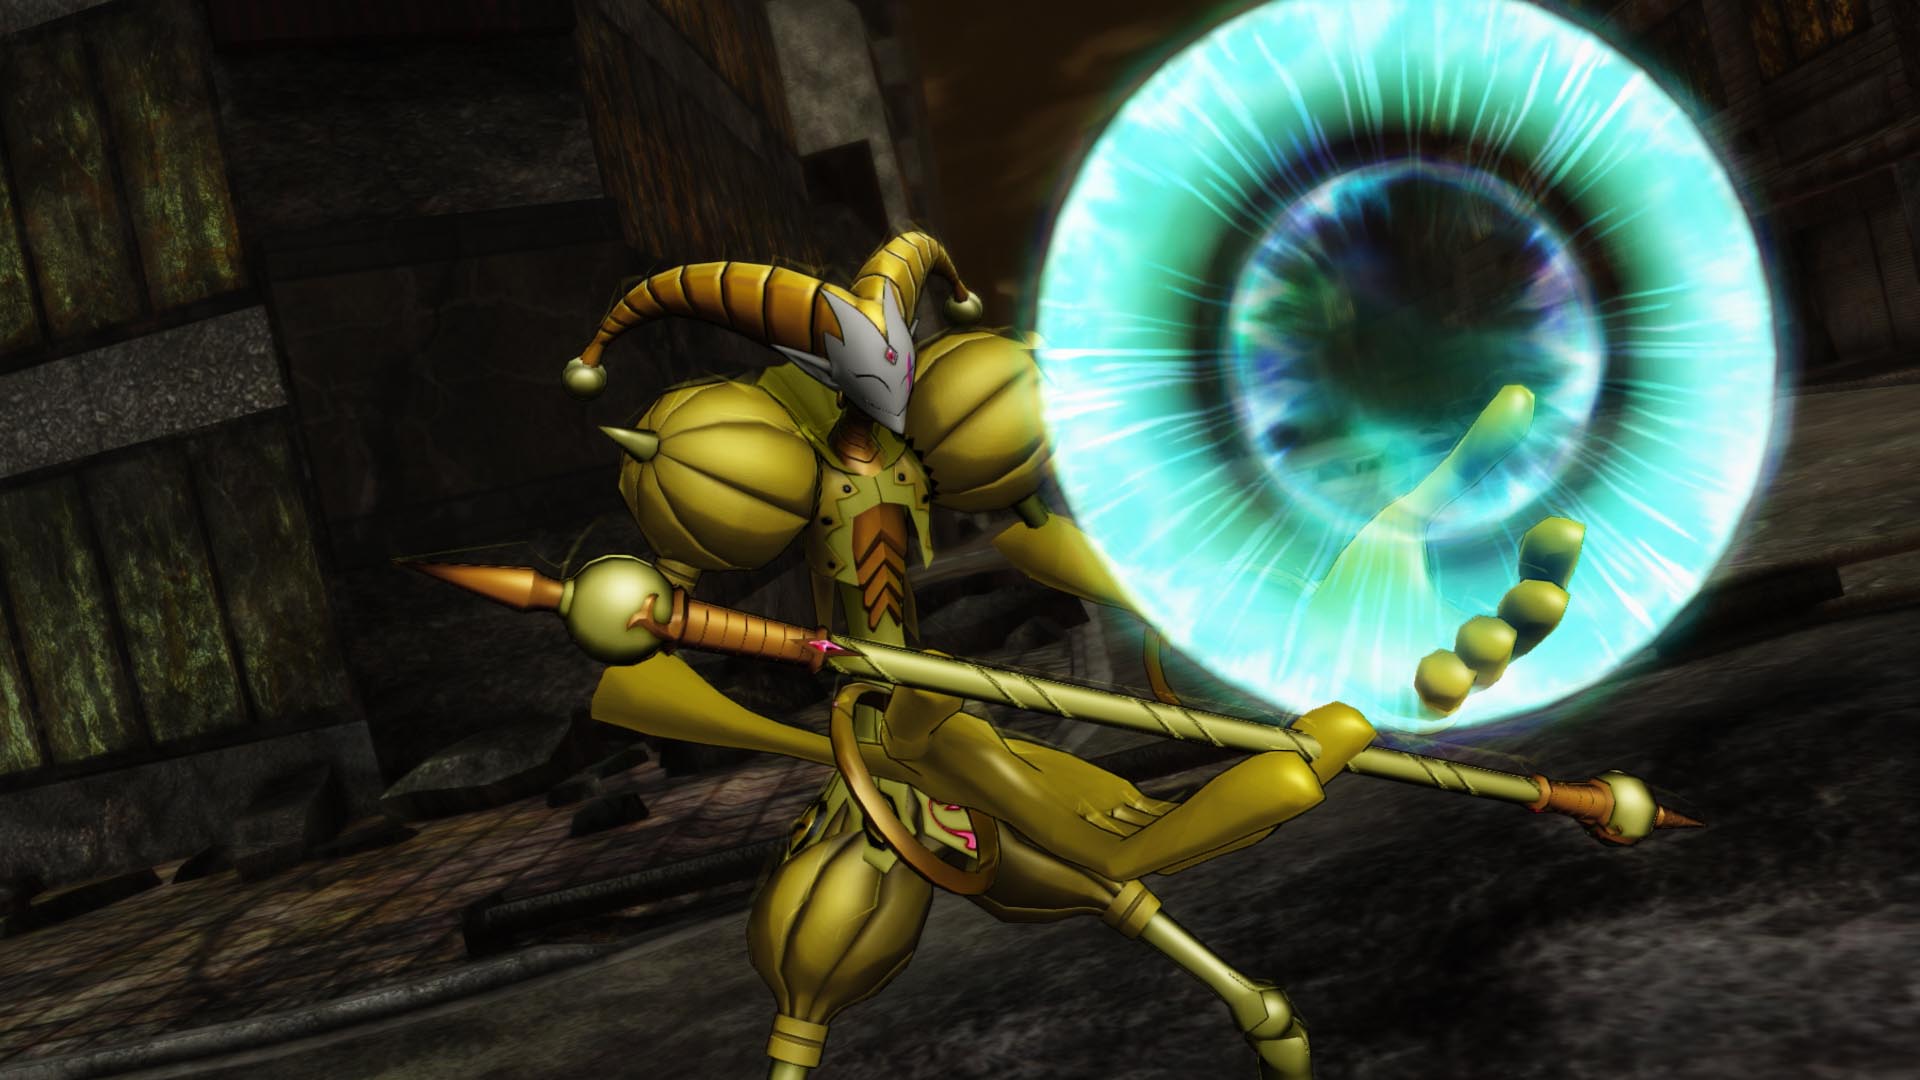 Accel World VS. Sword Art Online Deluxe Edition screenshot